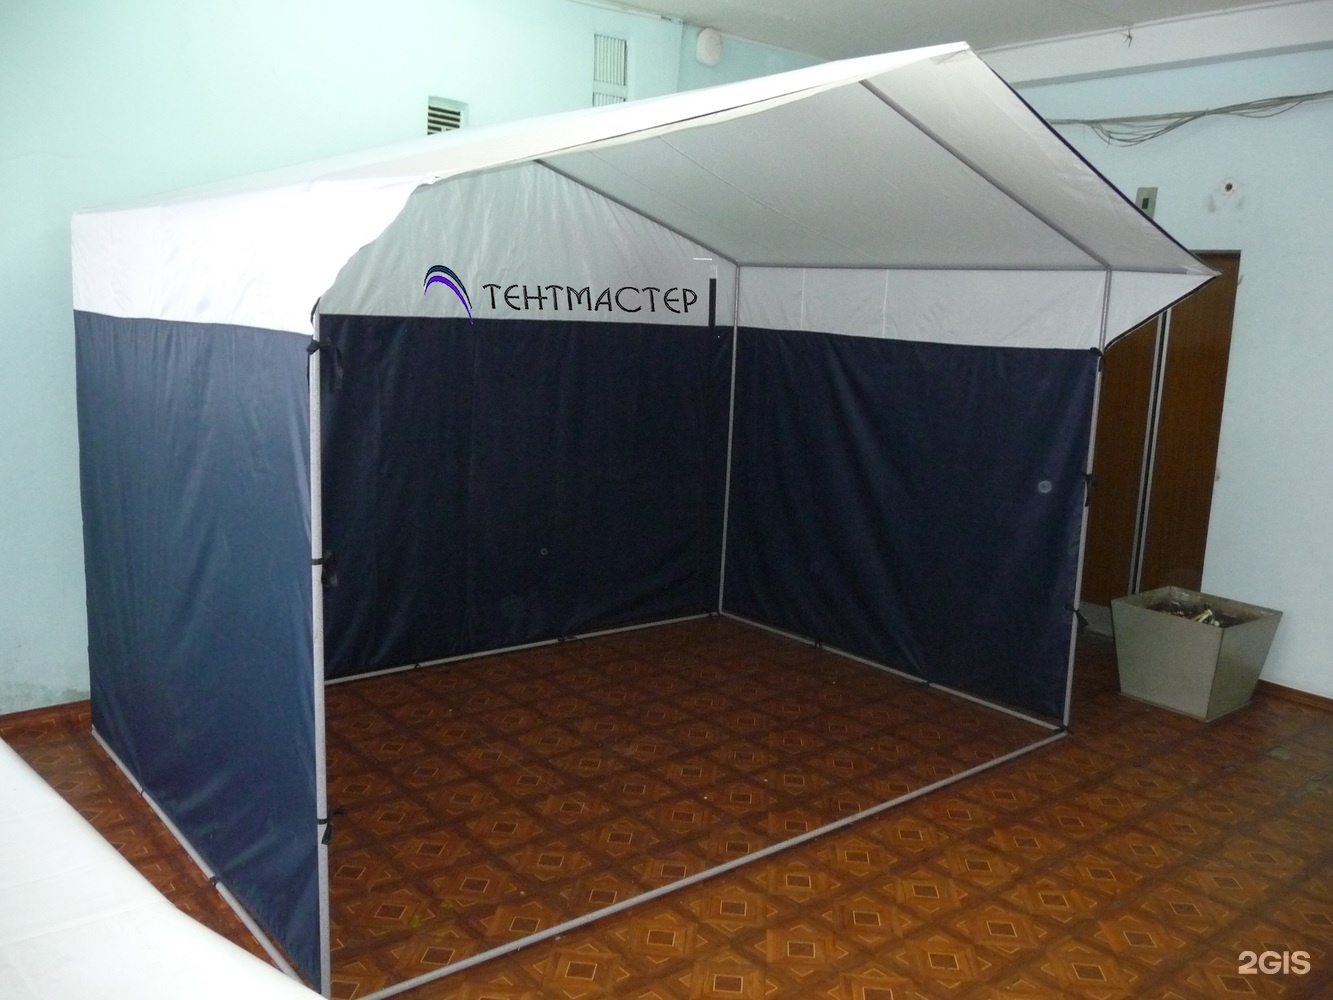 250 0 65. Палатка торговая 4 на 3. Торговая палатка белая. Торговые палатки на прокат в Новосибирске. Красноярск торговая палатка.